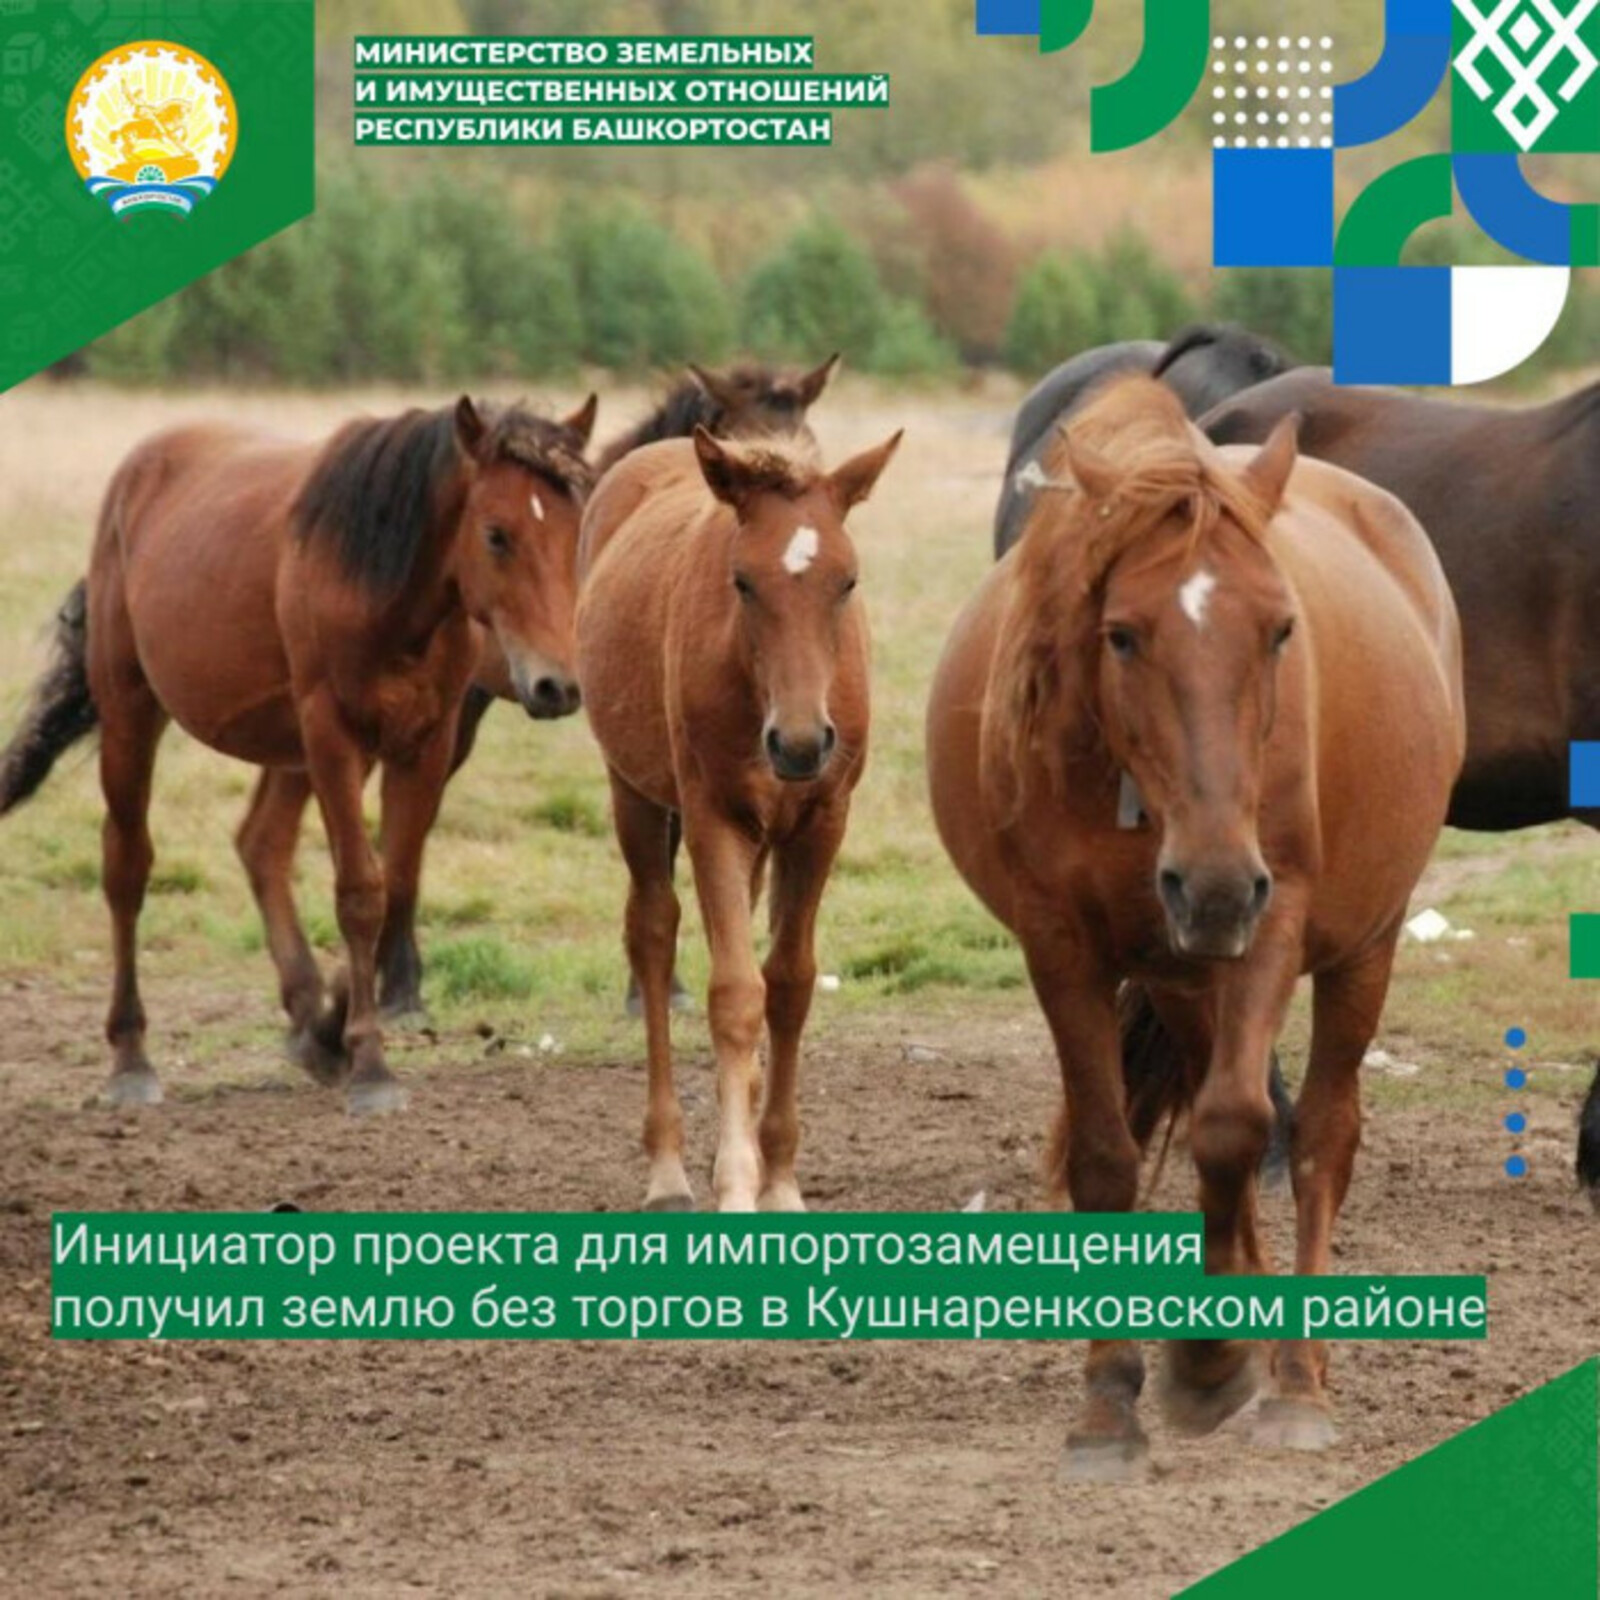 Агропредприятие в Башкортостане получило 73 гектара земли без торгов